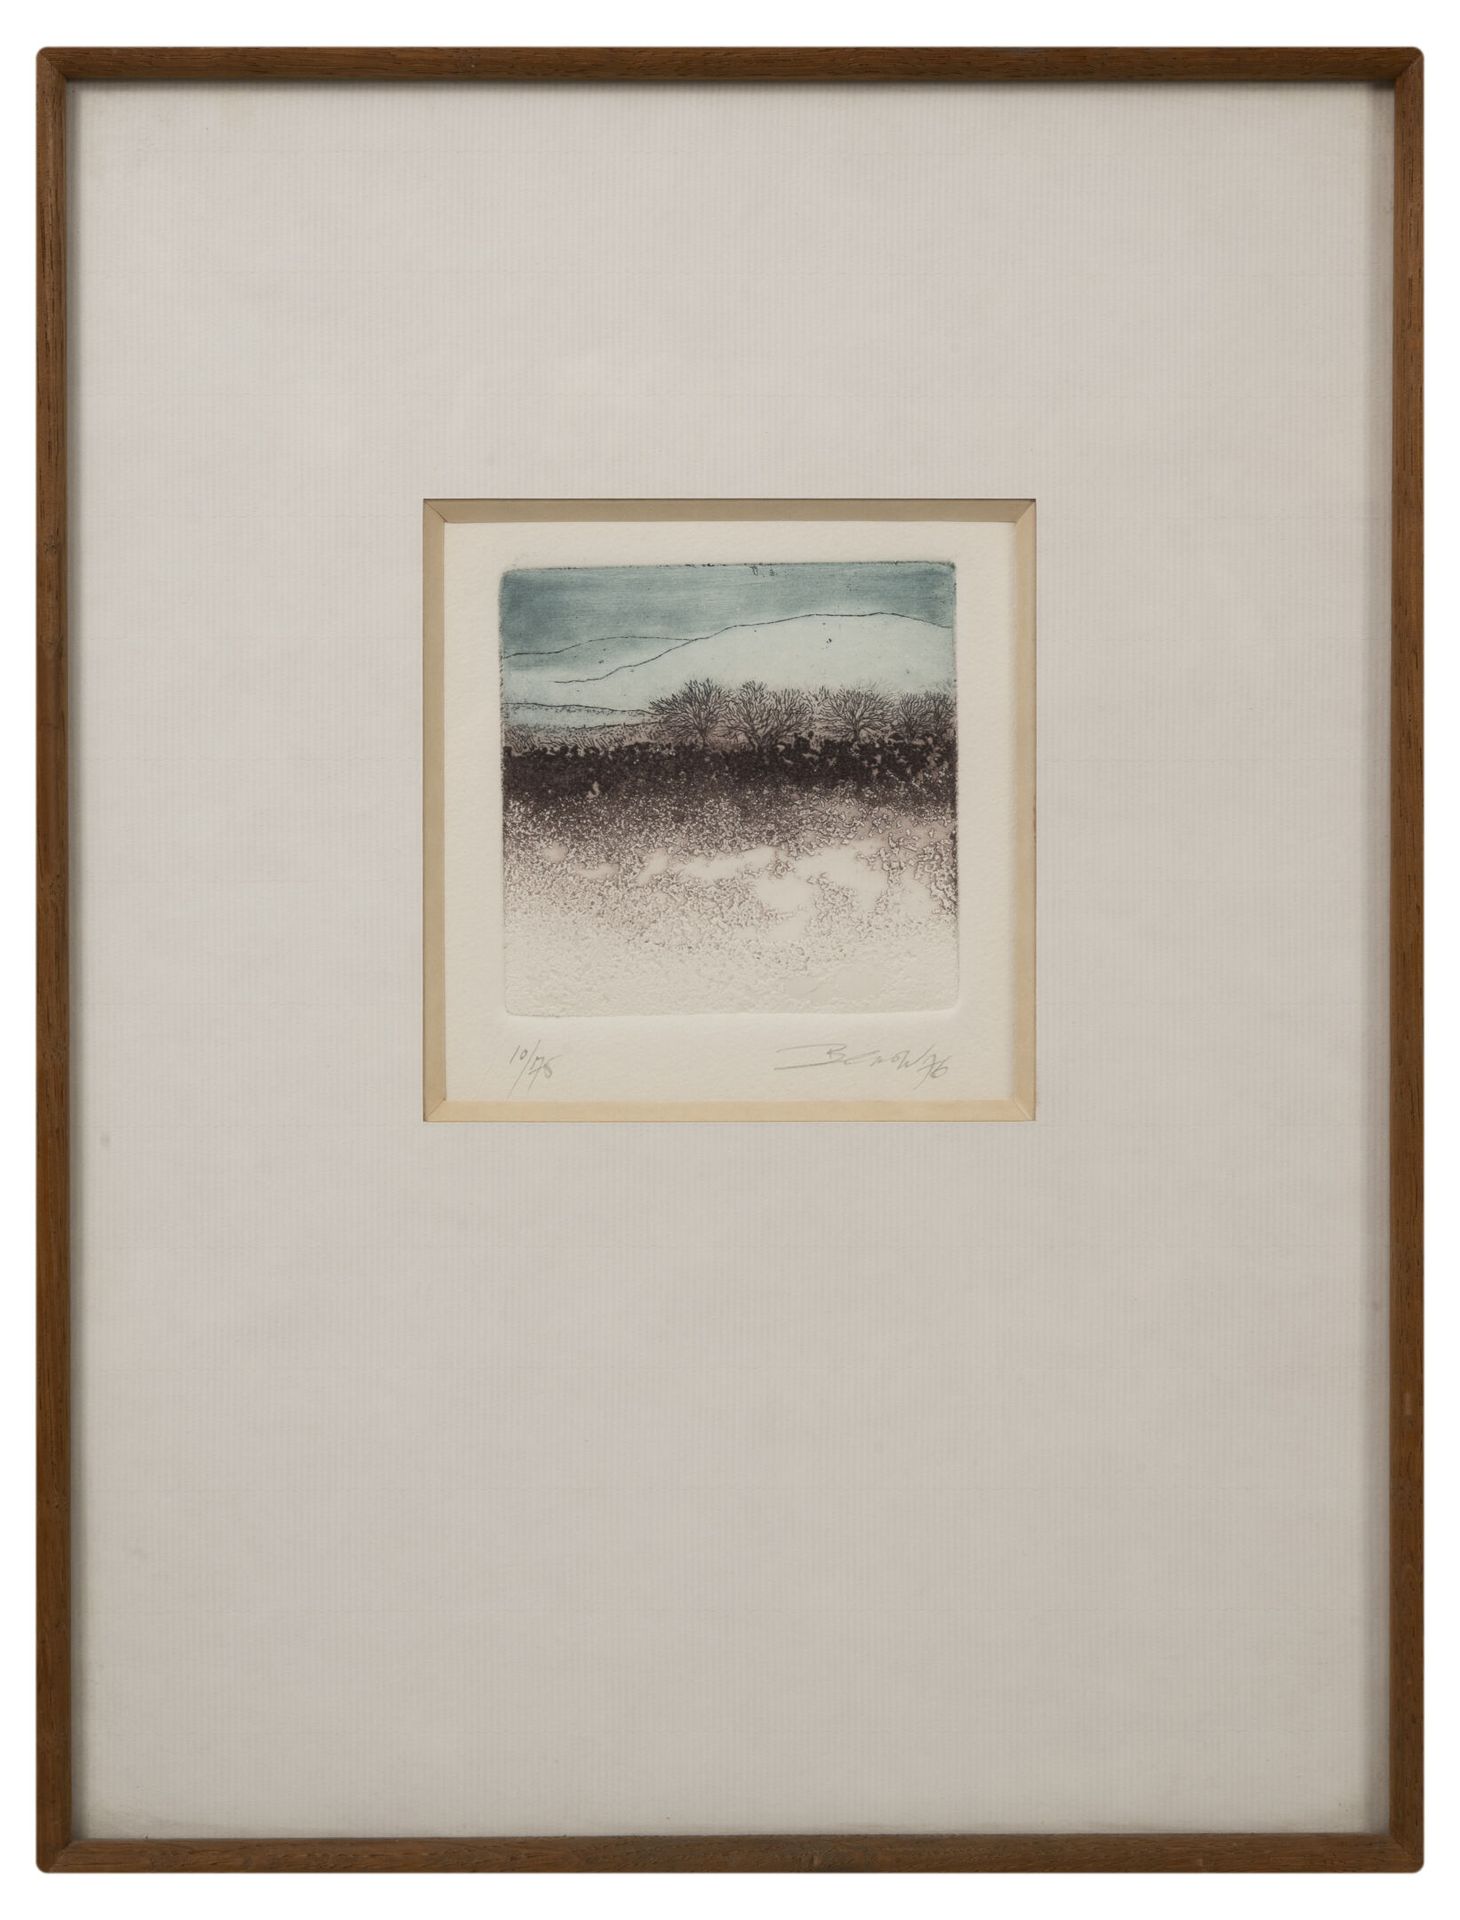 Sheila BENOW (1943) 景观，1976年。

纸上彩色蚀刻画。

右下方有签名和日期，左下方有编号10/75。

11 x 11厘米（展出）。